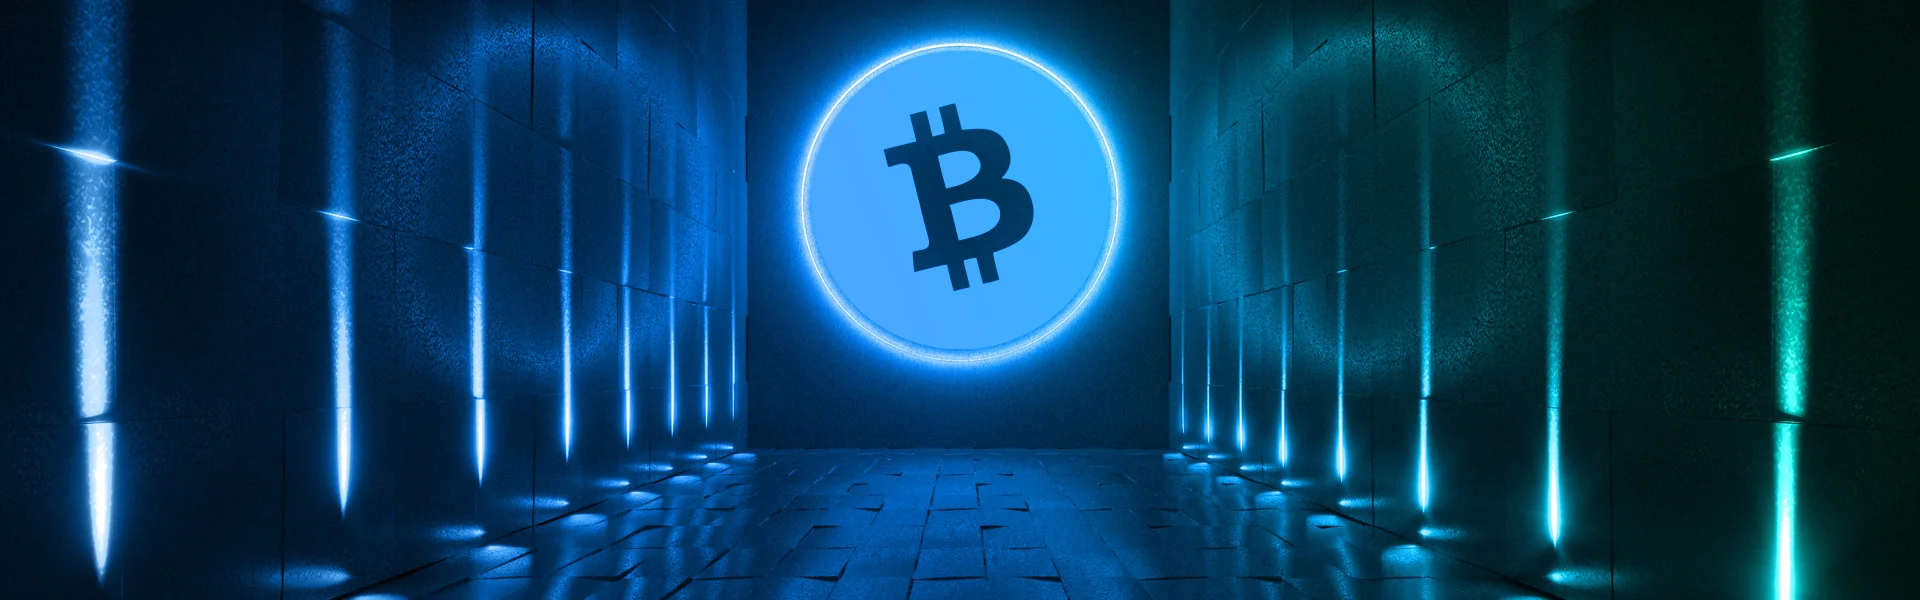 blog how to trade bitcoin 25 5 21